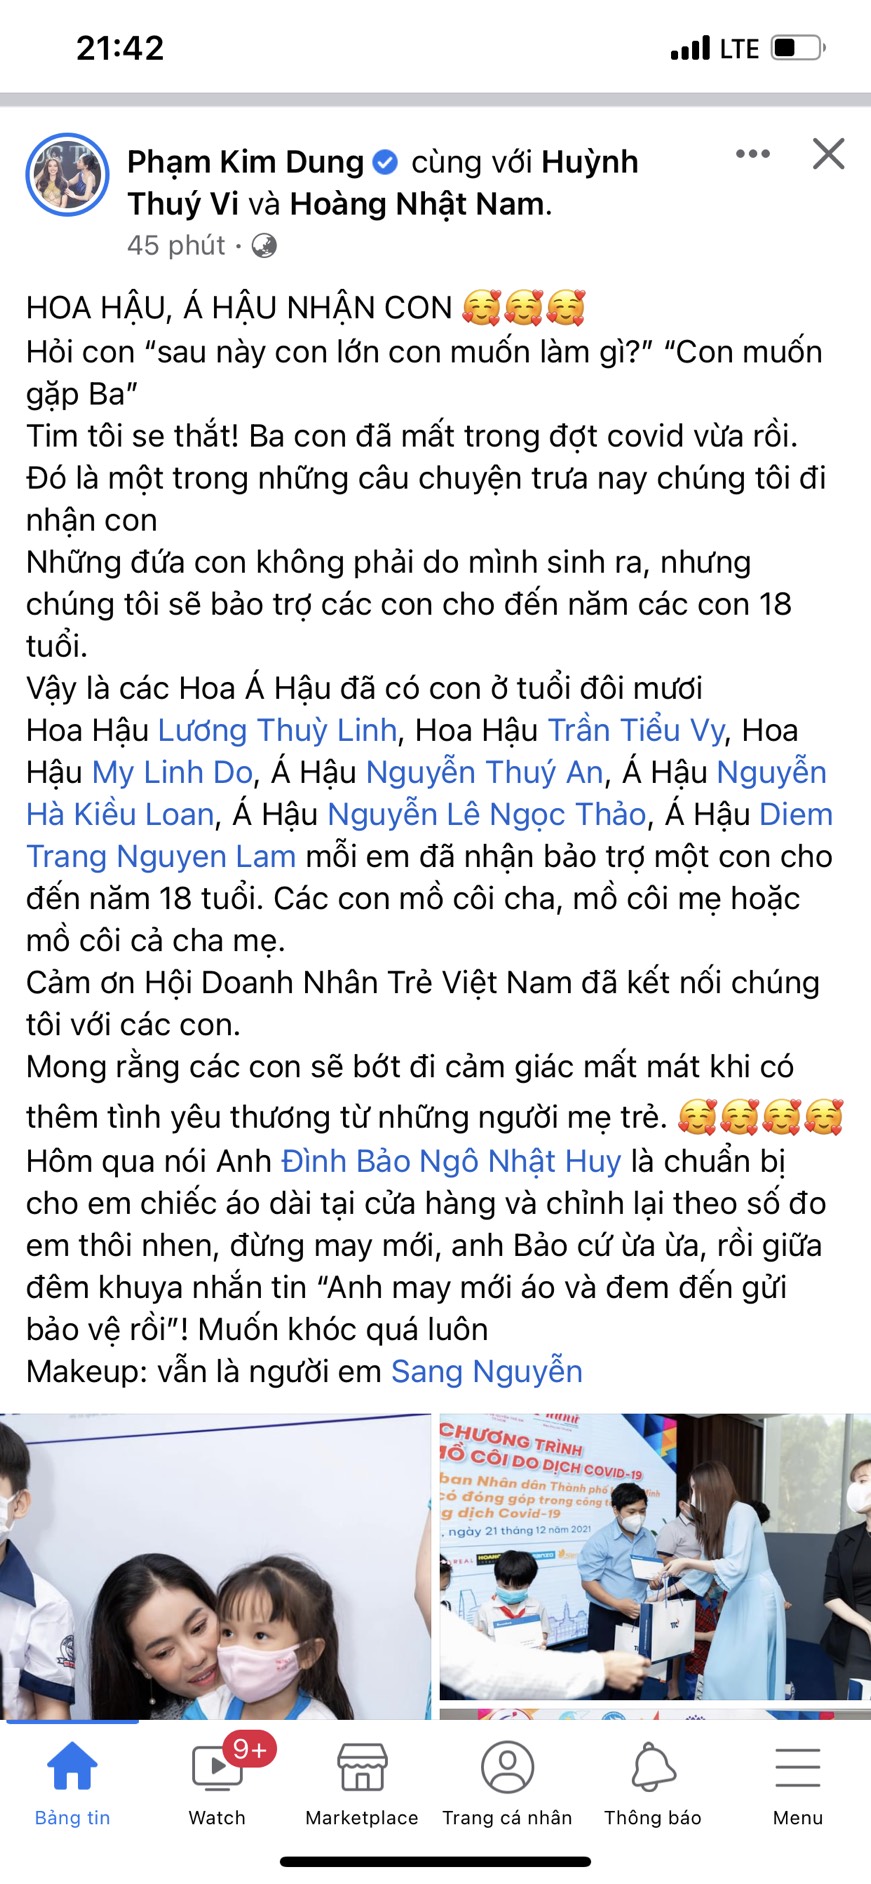 Bài viết được 'bà trùm Hoa hậu' Phạm Kim Dung đăng tải trên trang cá nhân